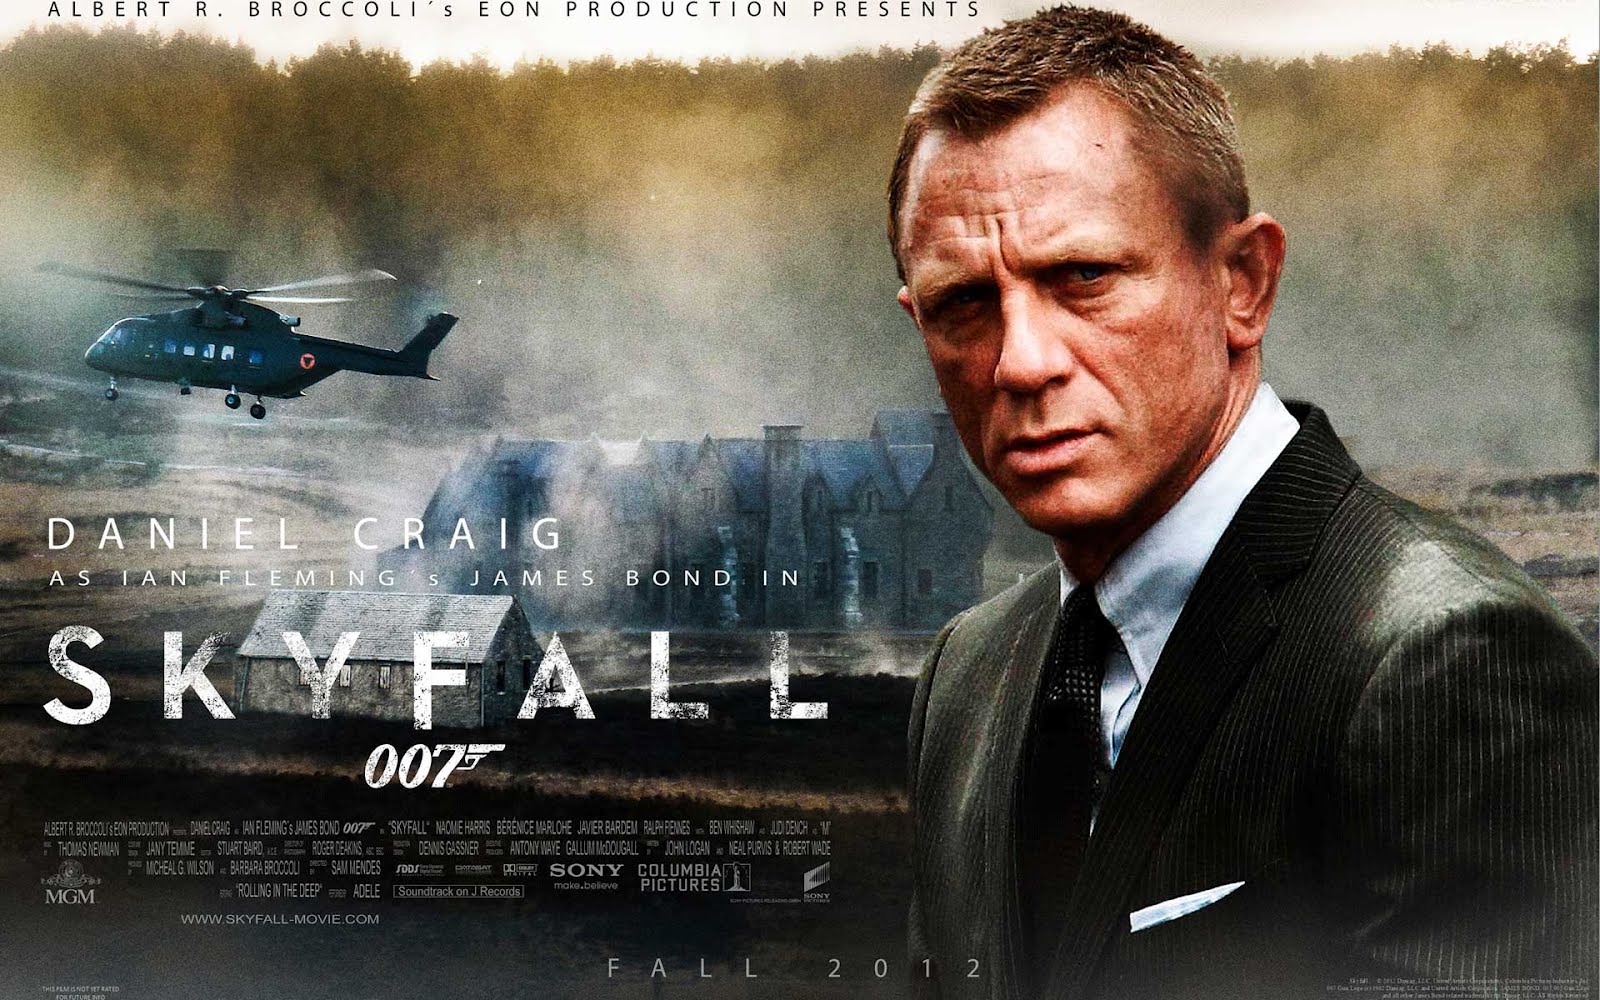 Bond Skyfall 007 iPad Retina Wallpapers | Free iPad Retina HD ...